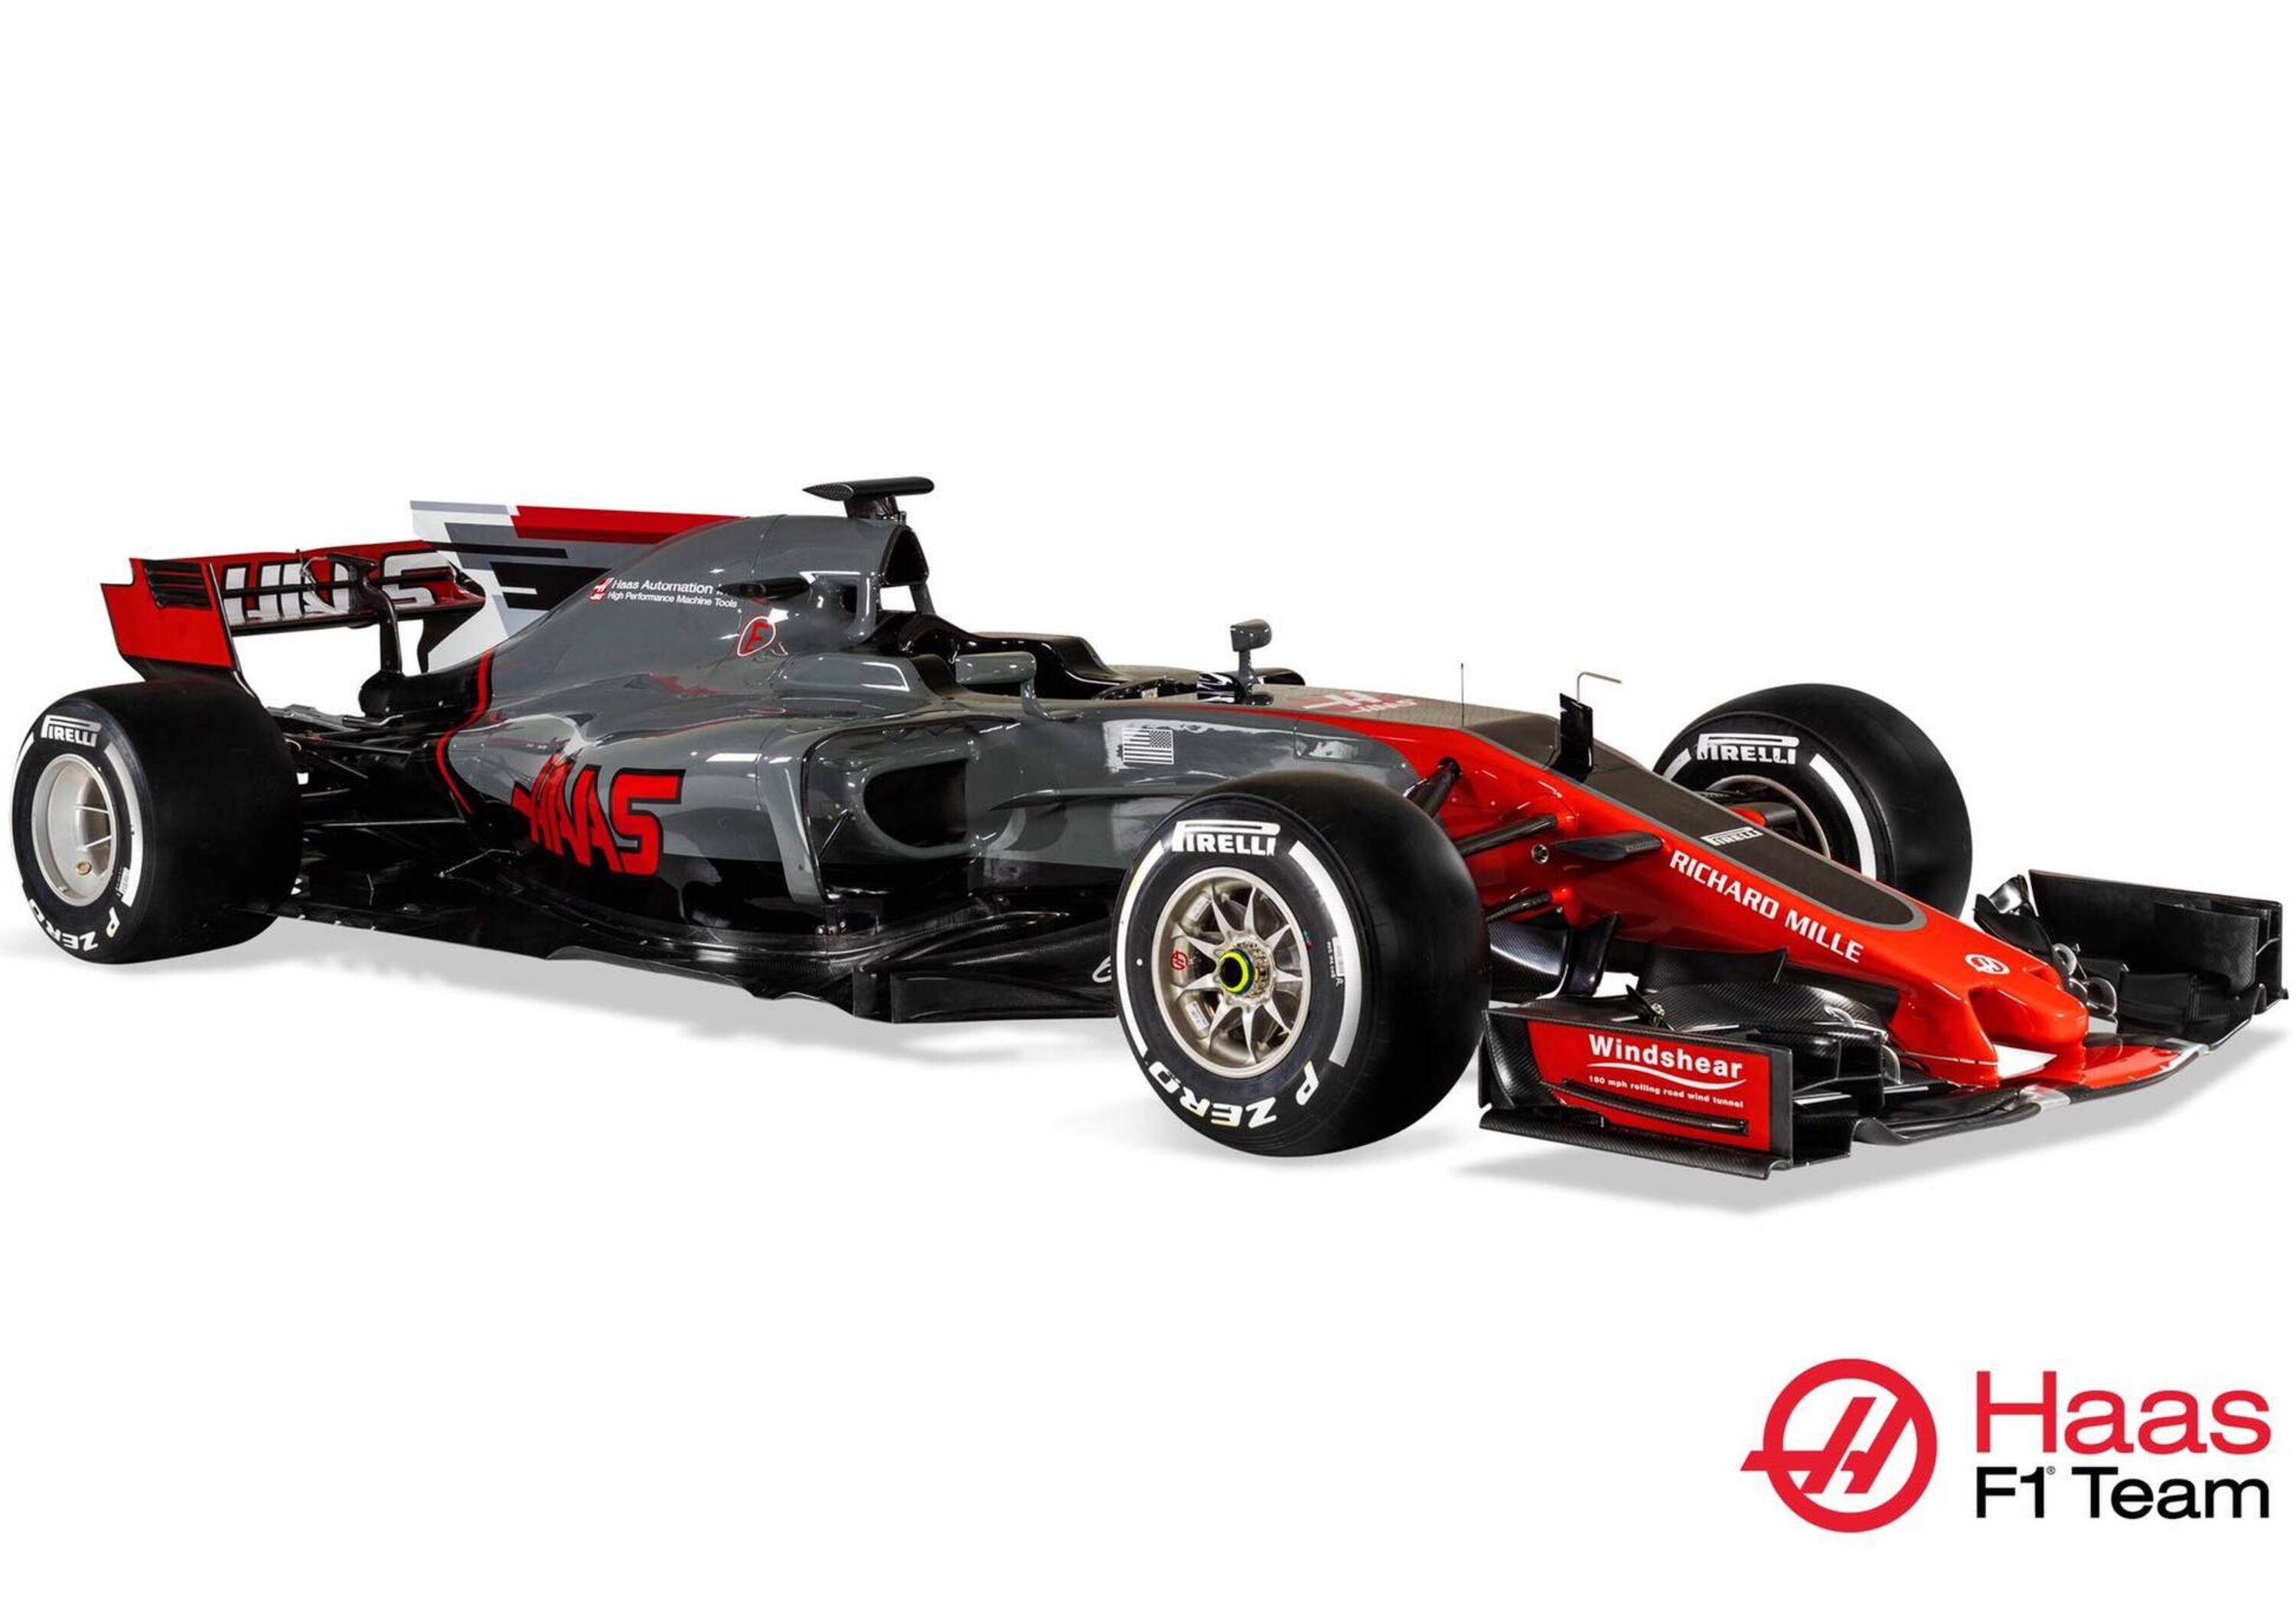 Formula 1 2017, Haas toglie i veli alla VF-17